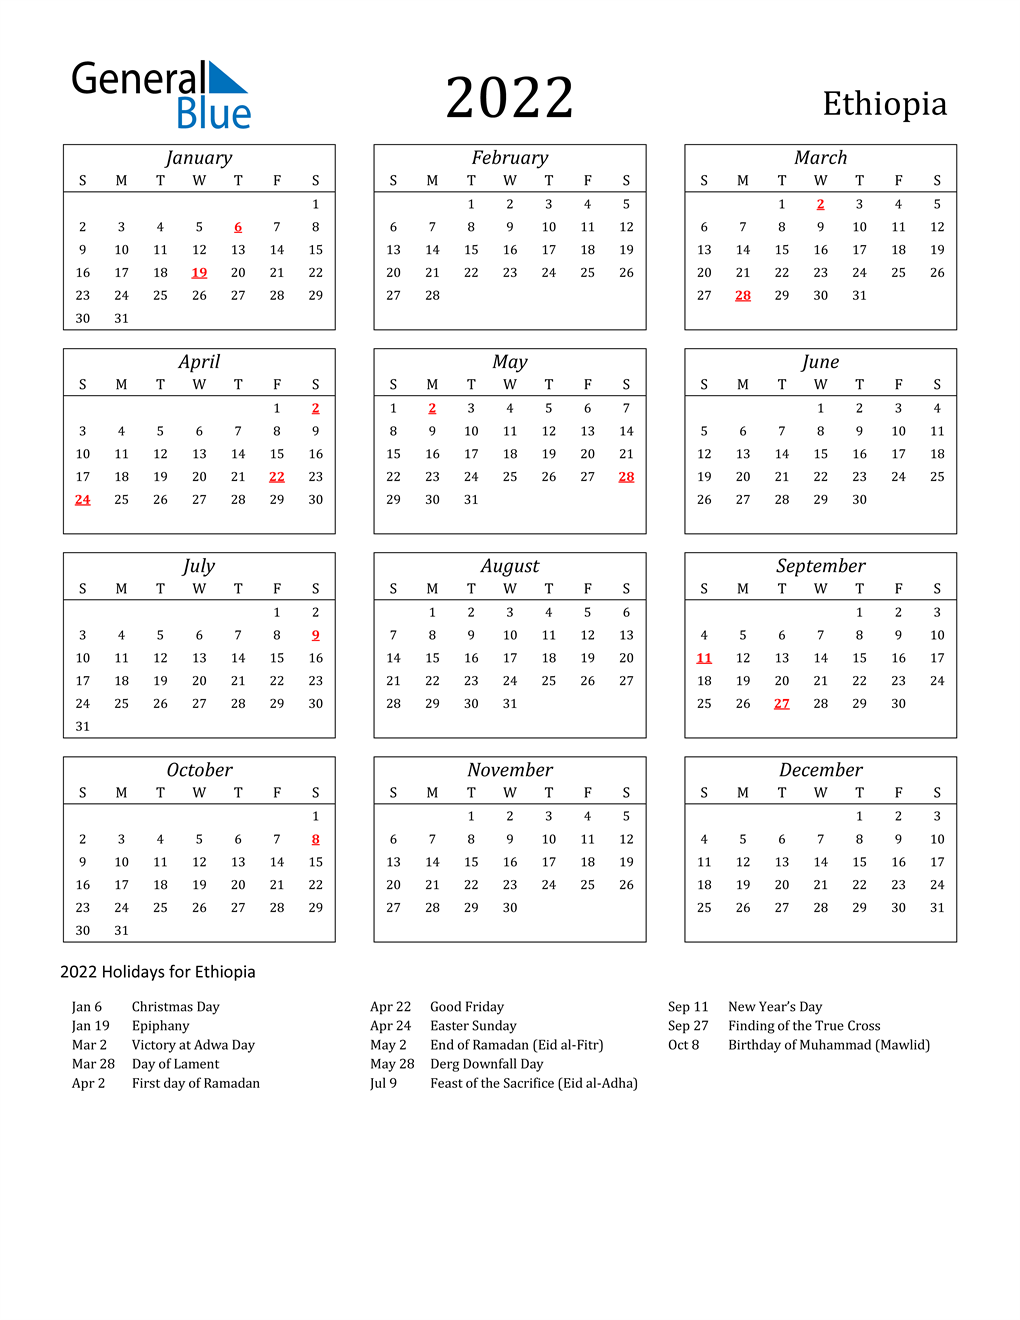 Orthodox Fasting Calendar 2022 2022 Ethiopia Calendar With Holidays